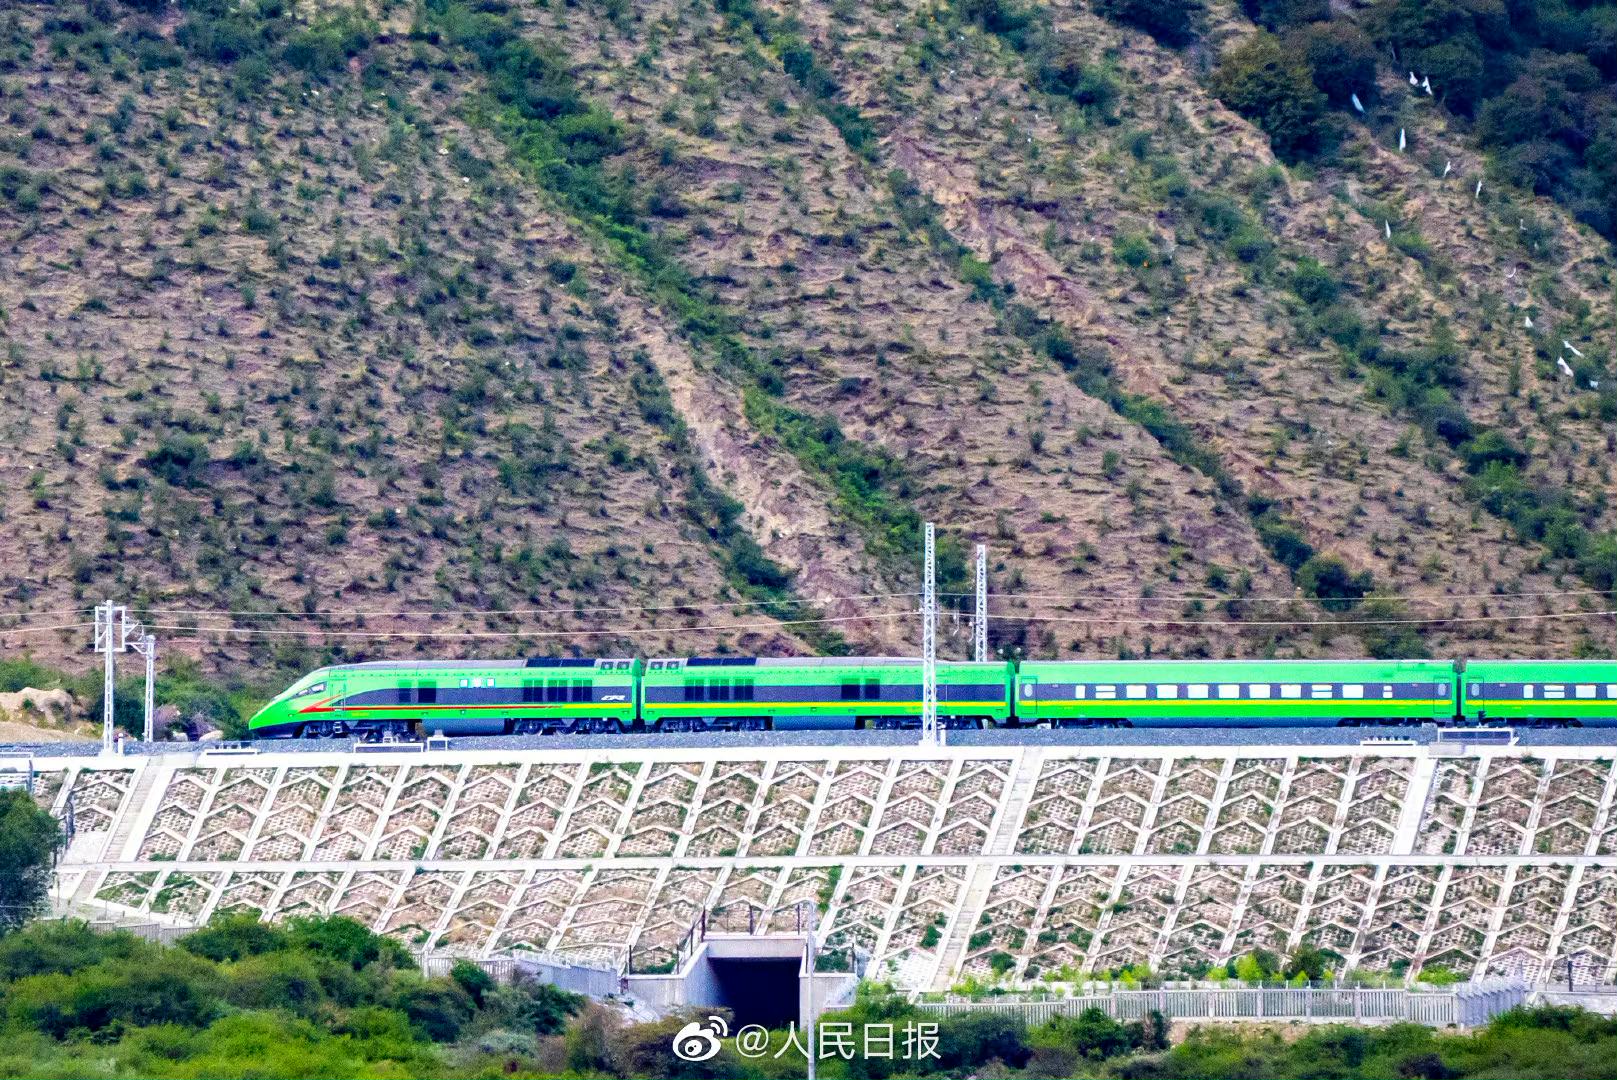 复兴号列车穿行在青藏高原上